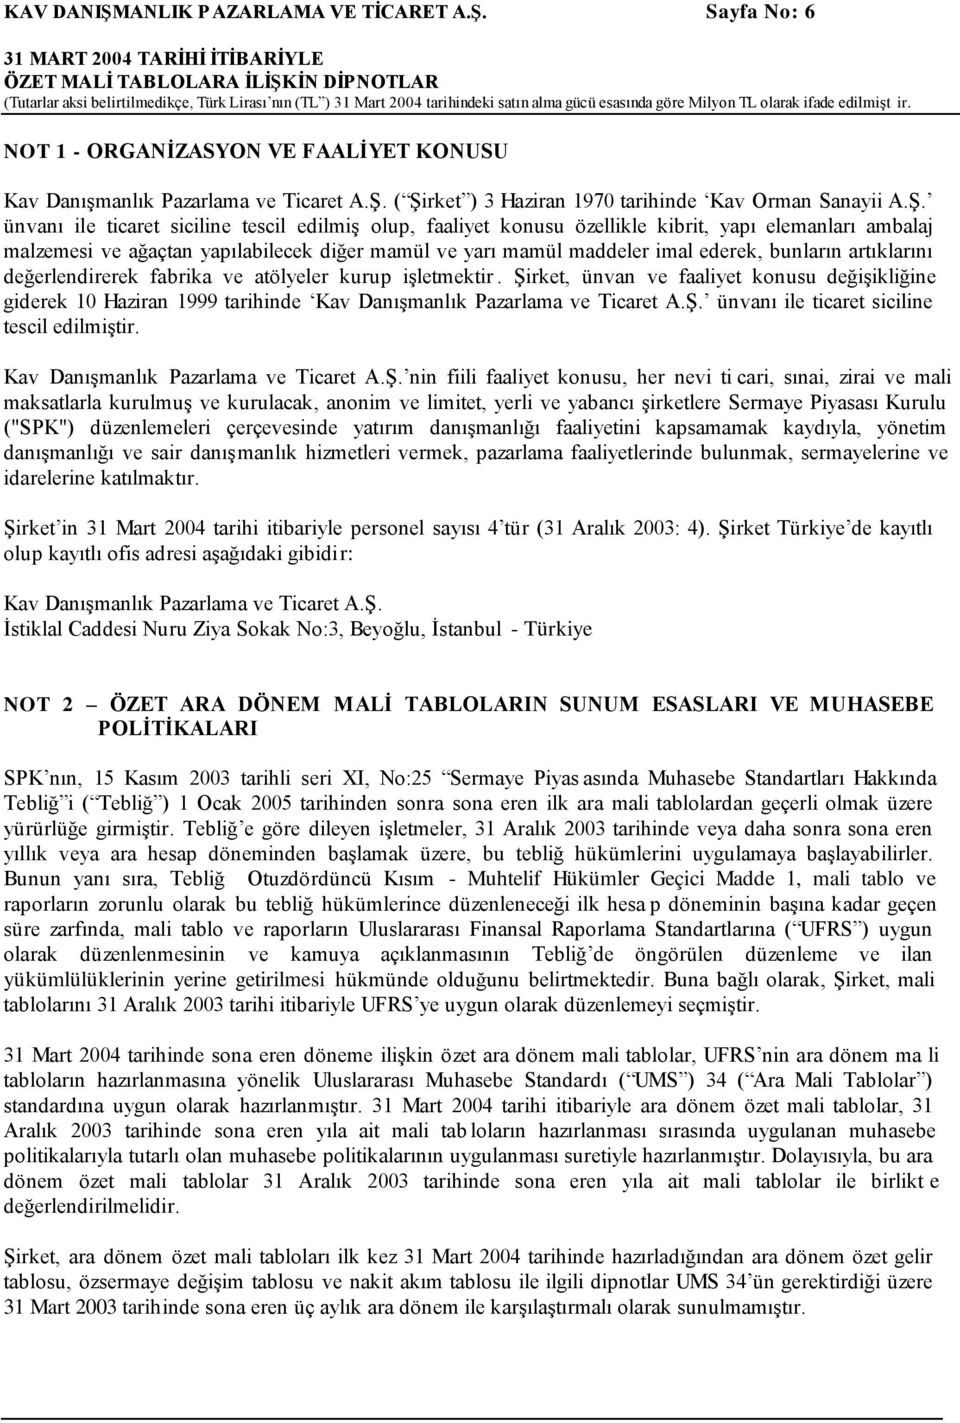 Sayfa No: 6 ÖZET MALİ TABLOLARA İLİŞKİN DİPNOTLAR (Tutarlar aksi belirtilmedikçe, Türk Lirası nın (TL ) 31 Mart 2004 tarihindeki satın alma gücü esasında göre Milyon TL olarak ifade edilmişt ir.